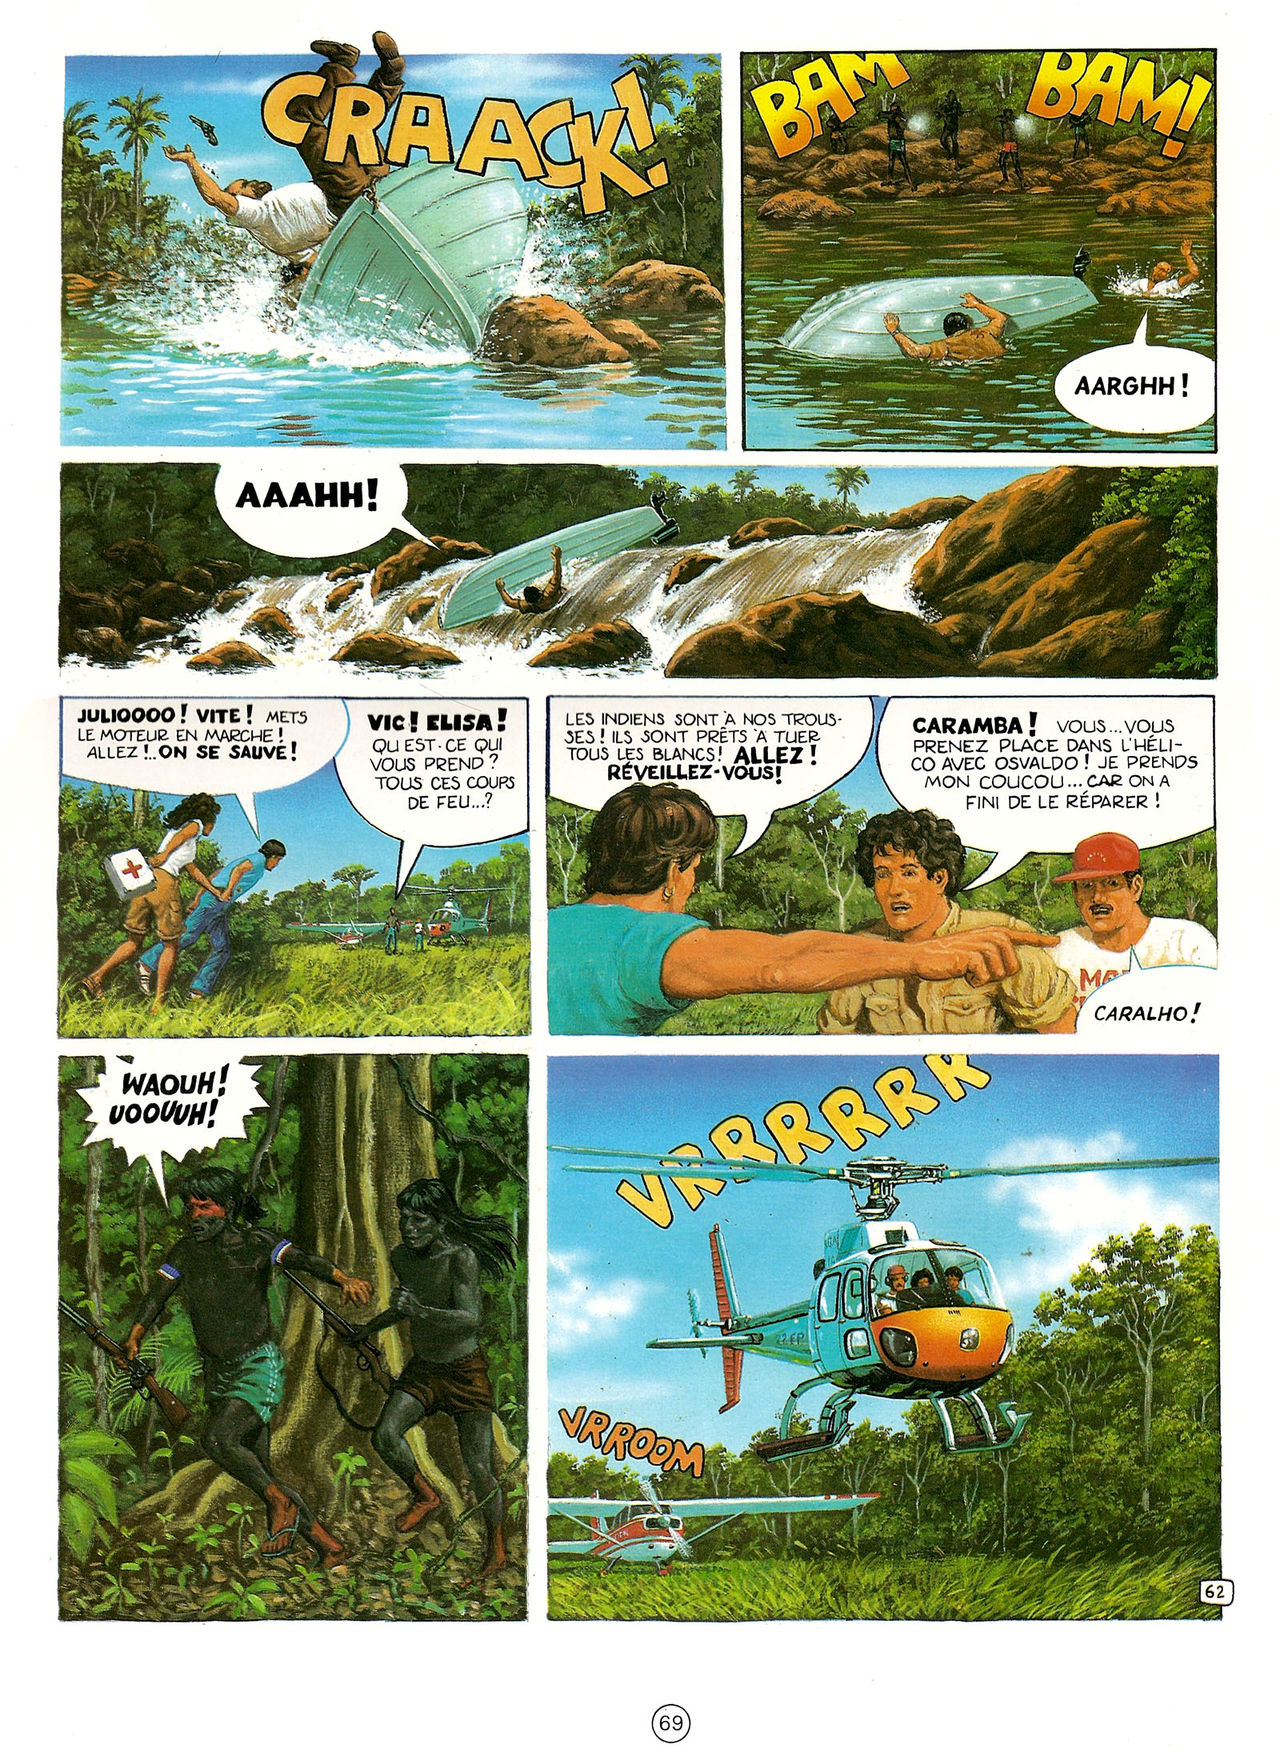 Les Aventures de Vic Voyage 05 - Brazil! numero d'image 69